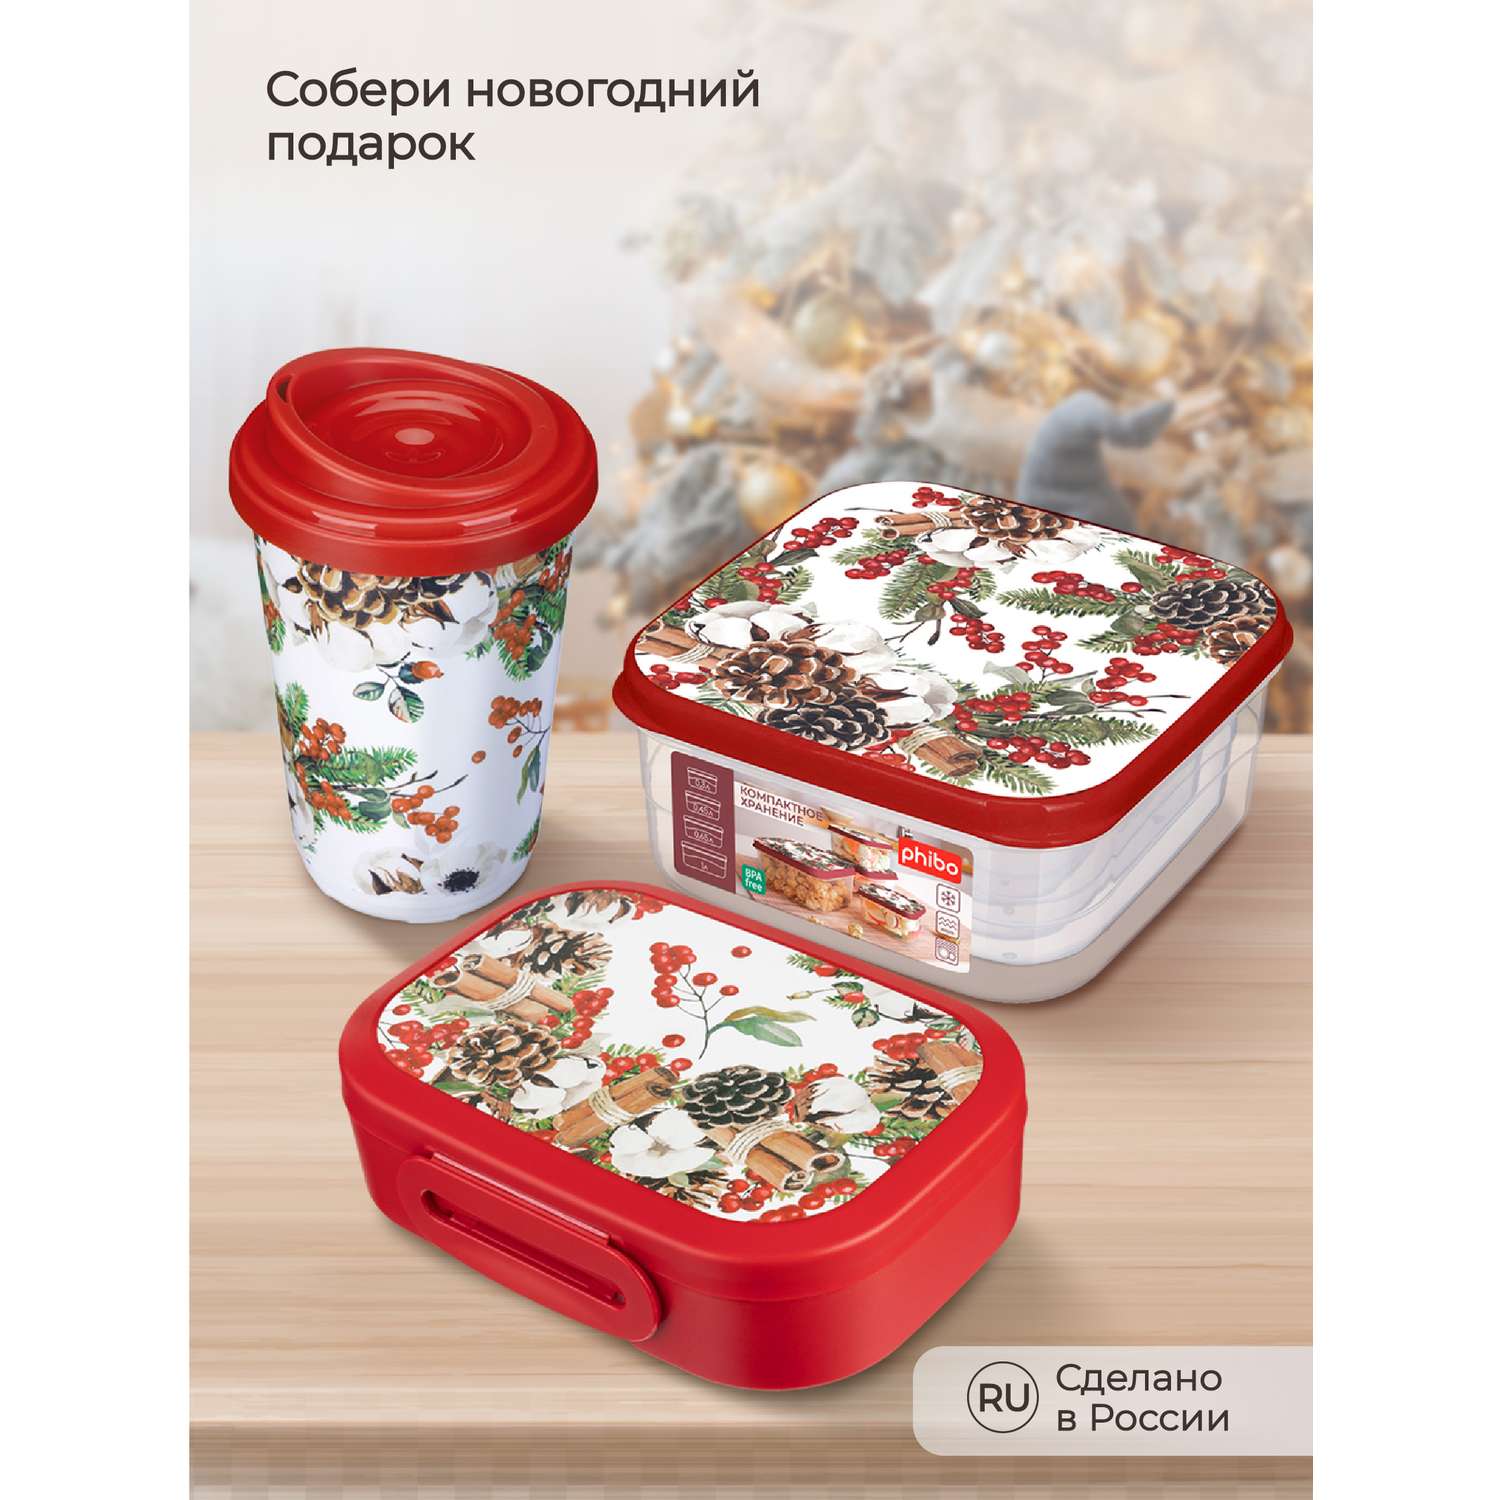 Комплект контейнеров Phibo для продуктов с Новогодним декором Хлопок 4 шт. 0.3л + 0.45л + 0.65л + 1л бордовый - фото 6